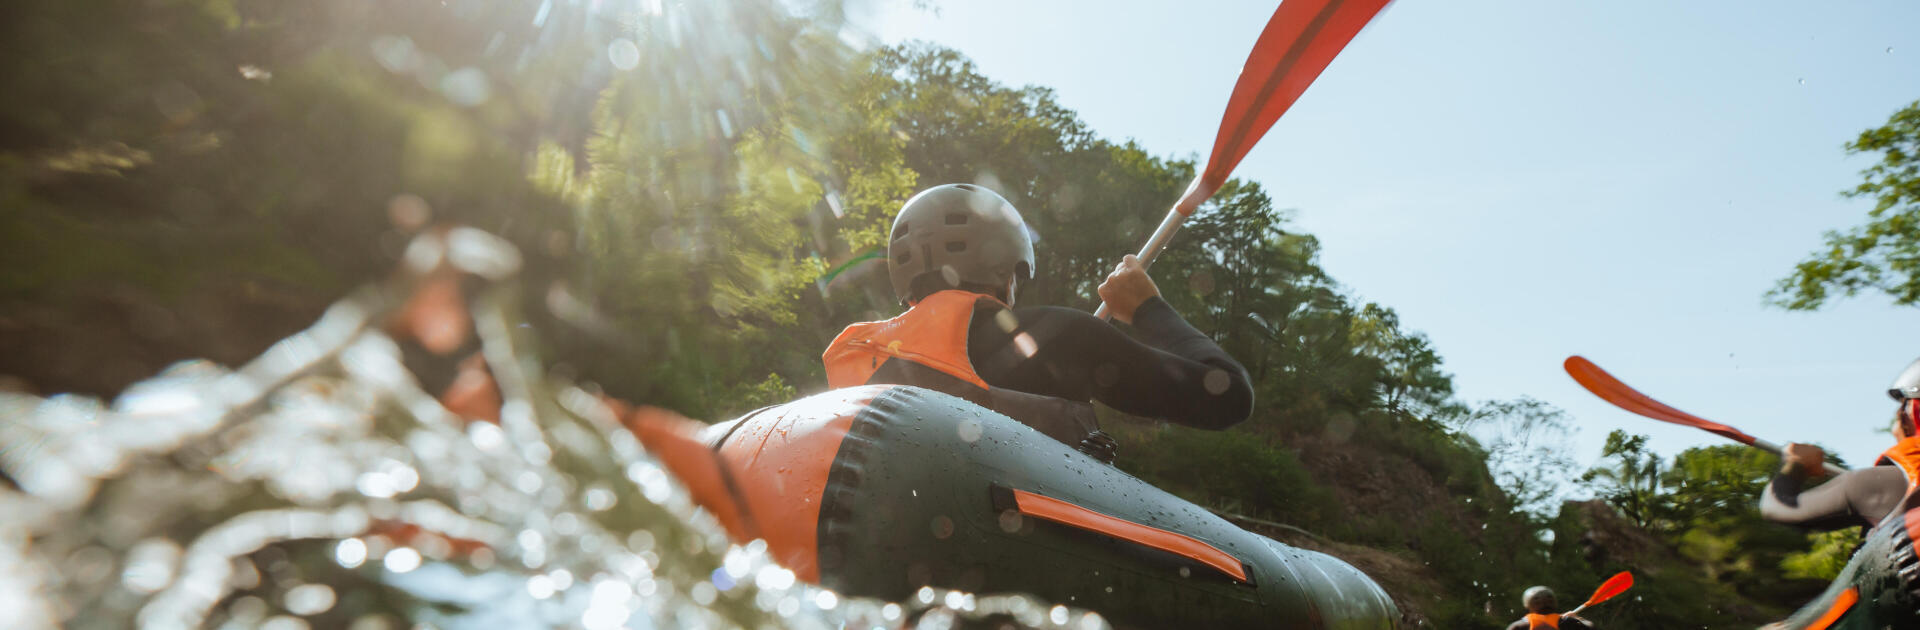 La canoa-kayak gonfiabile si può riparare?